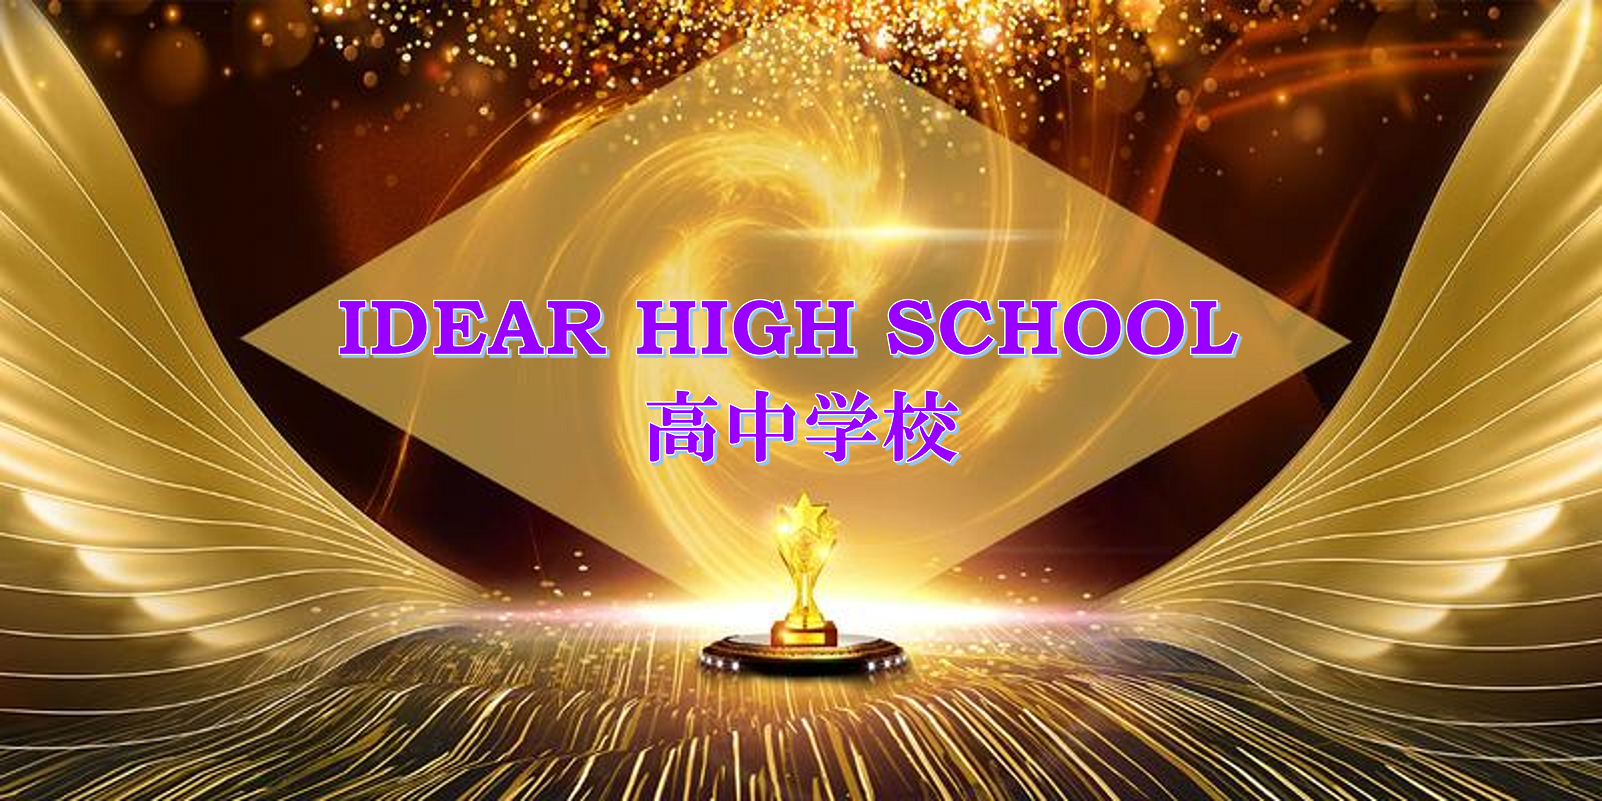 iDEAR High School - China